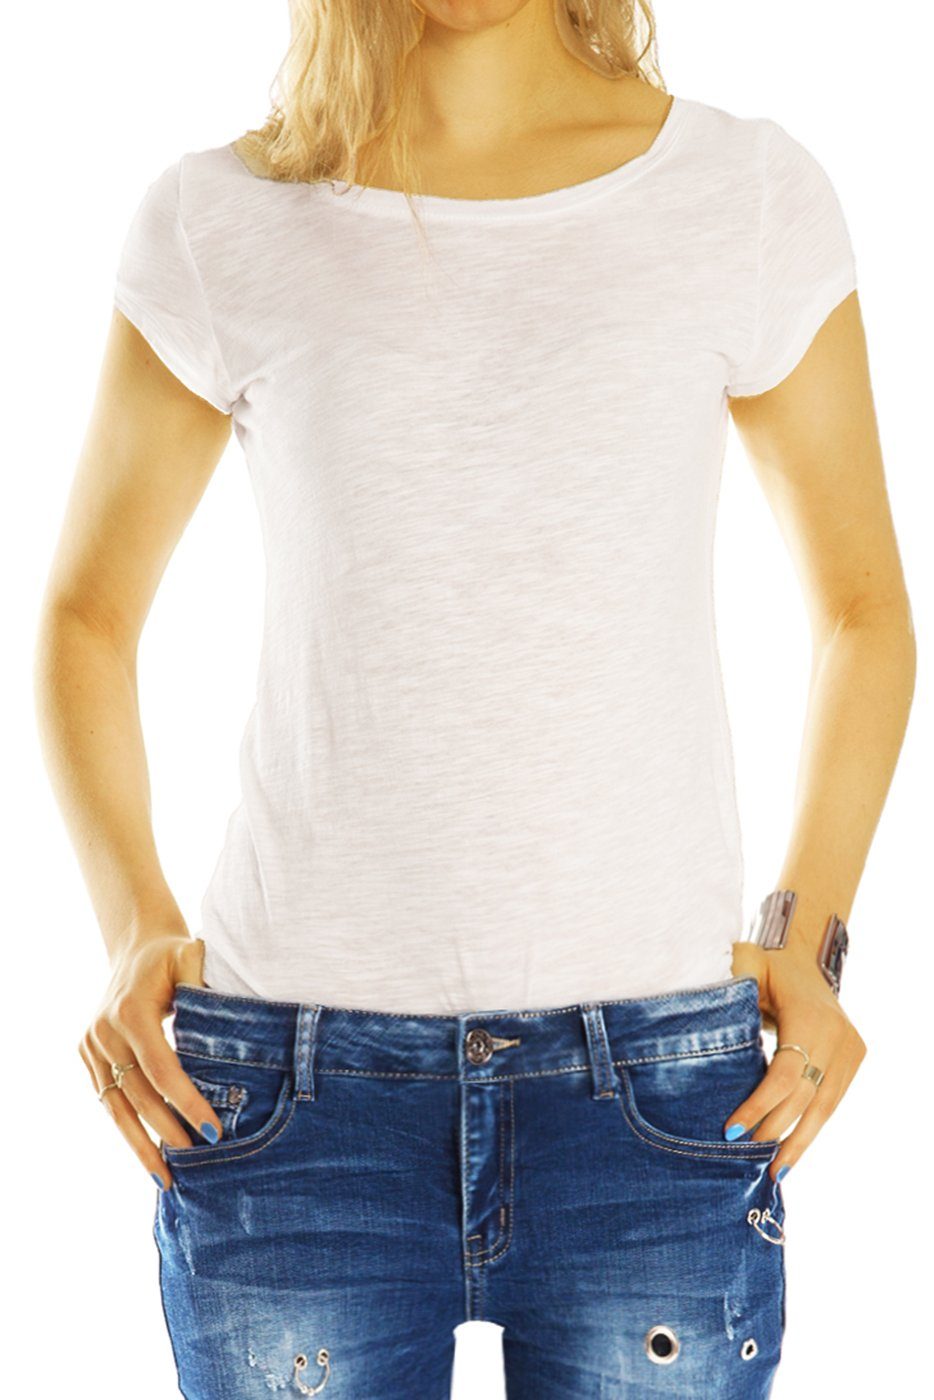 Stretch-Anteil, j15p - Used-Optik Destroyed-Jeans styled - ausgefallene Damen Jeans Hose Röhrenjeans, 5-Pocket-Style mit be Skinny